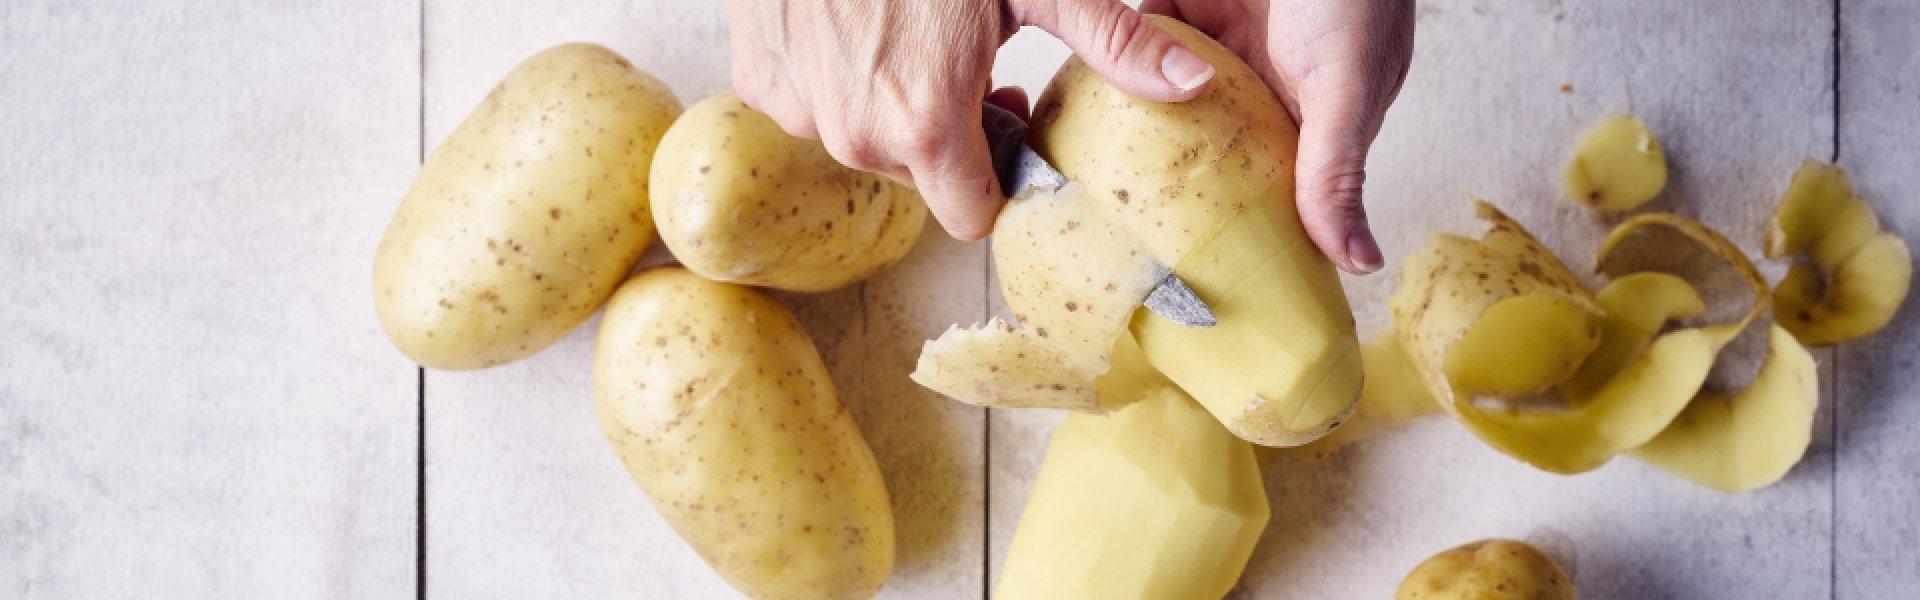 éplucher des pommes de terre